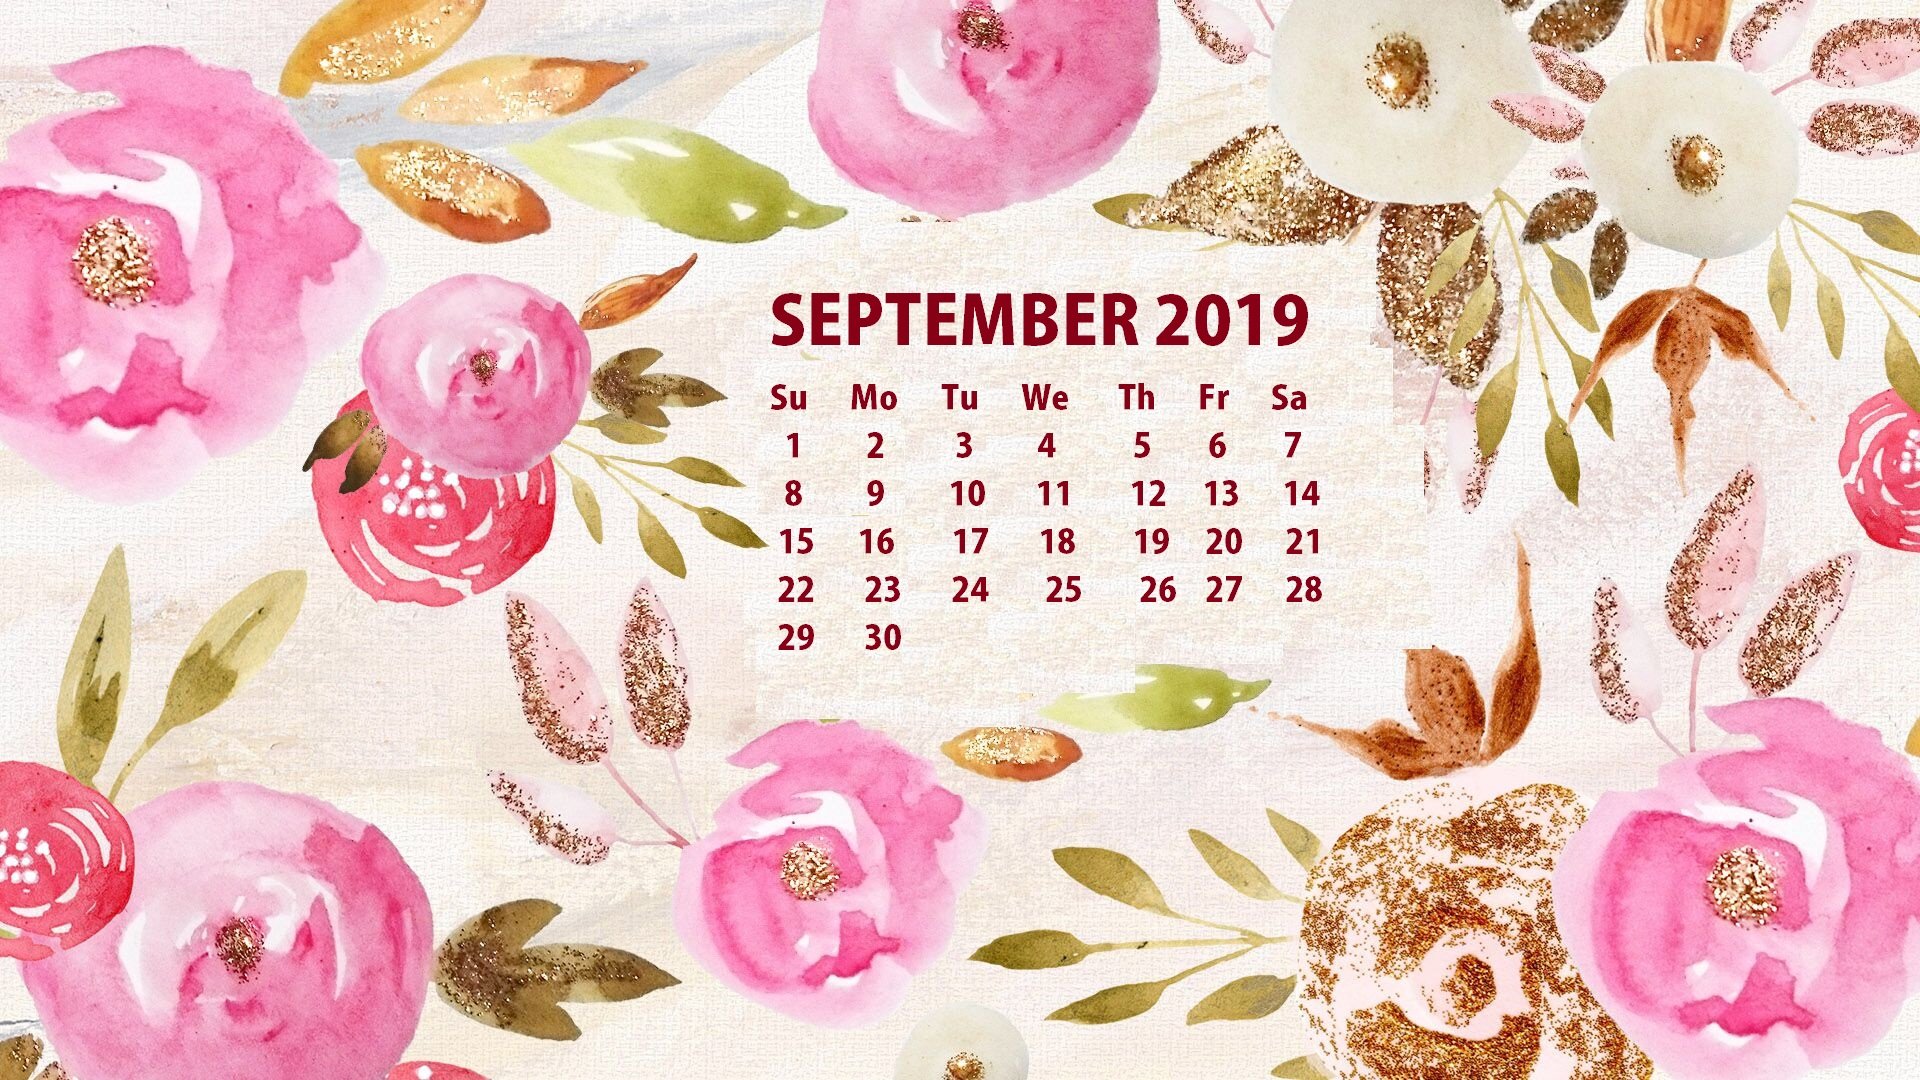 September 2019 HD Calendar Wallpaper Latest Calendar 1920x1080